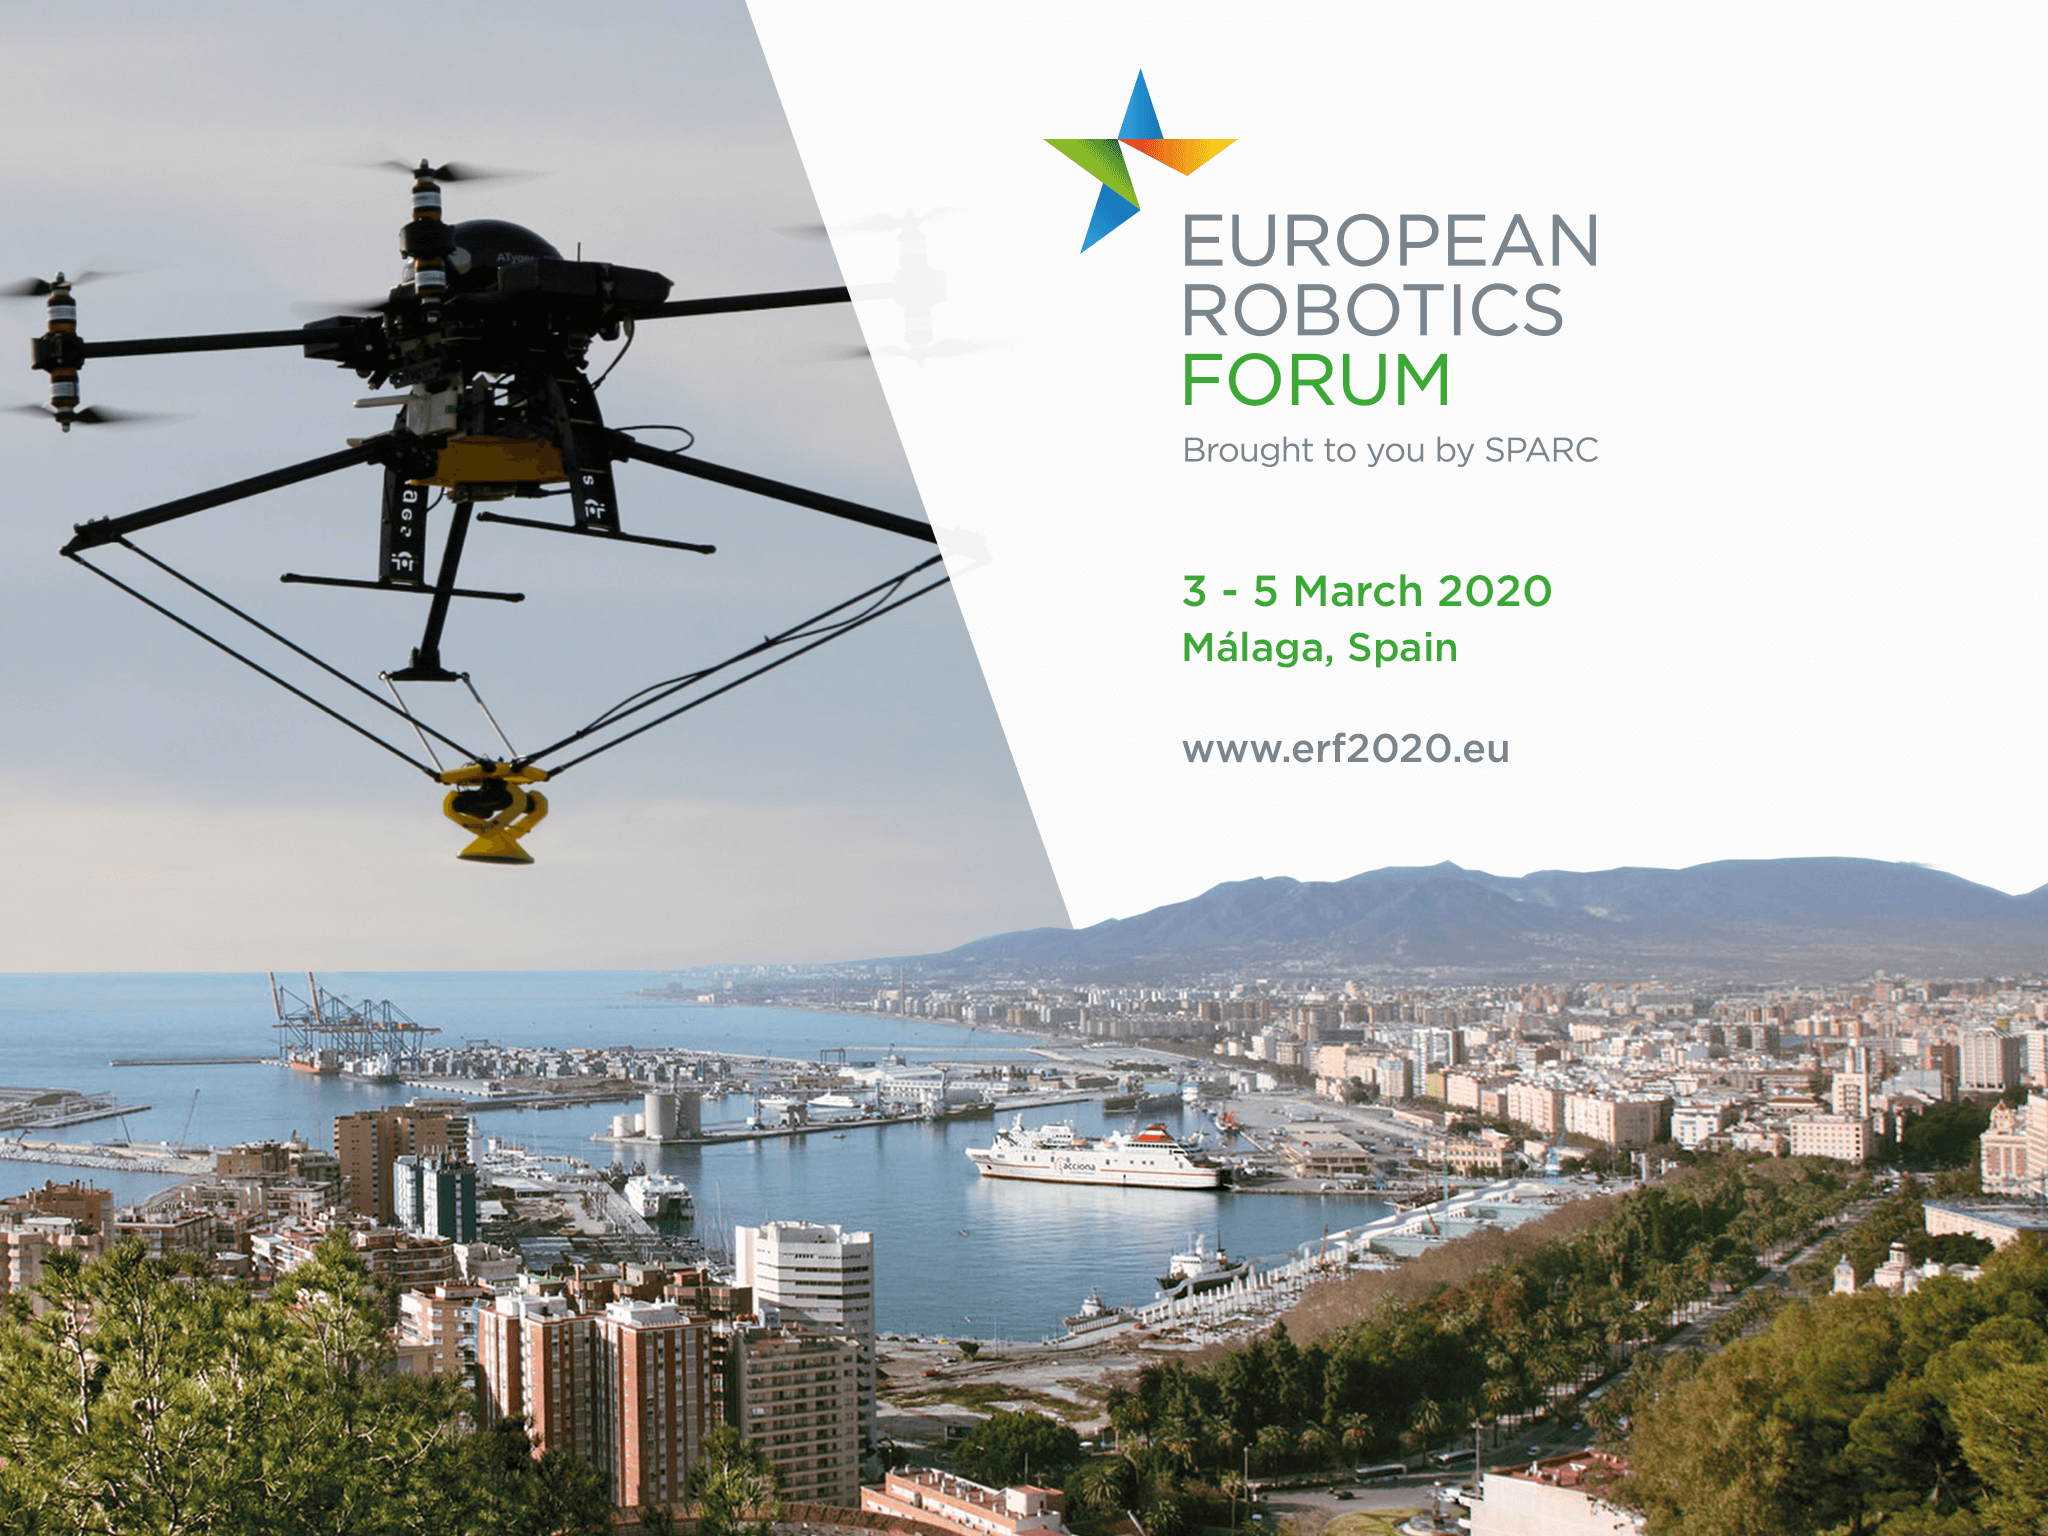 European robotics forum 2020